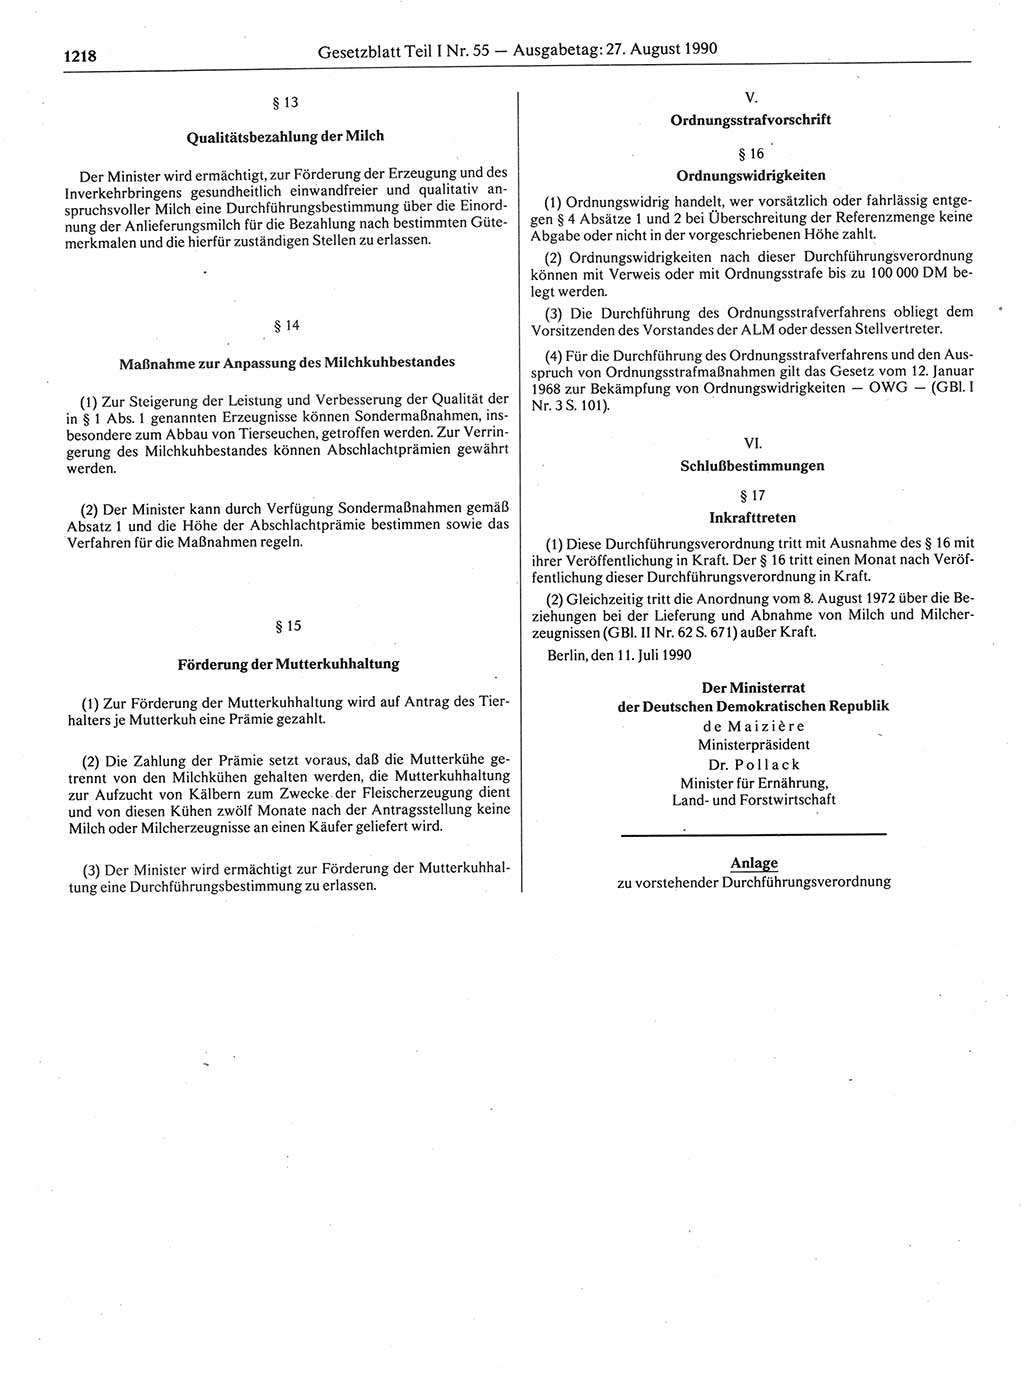 Gesetzblatt (GBl.) der Deutschen Demokratischen Republik (DDR) Teil Ⅰ 1990, Seite 1218 (GBl. DDR Ⅰ 1990, S. 1218)